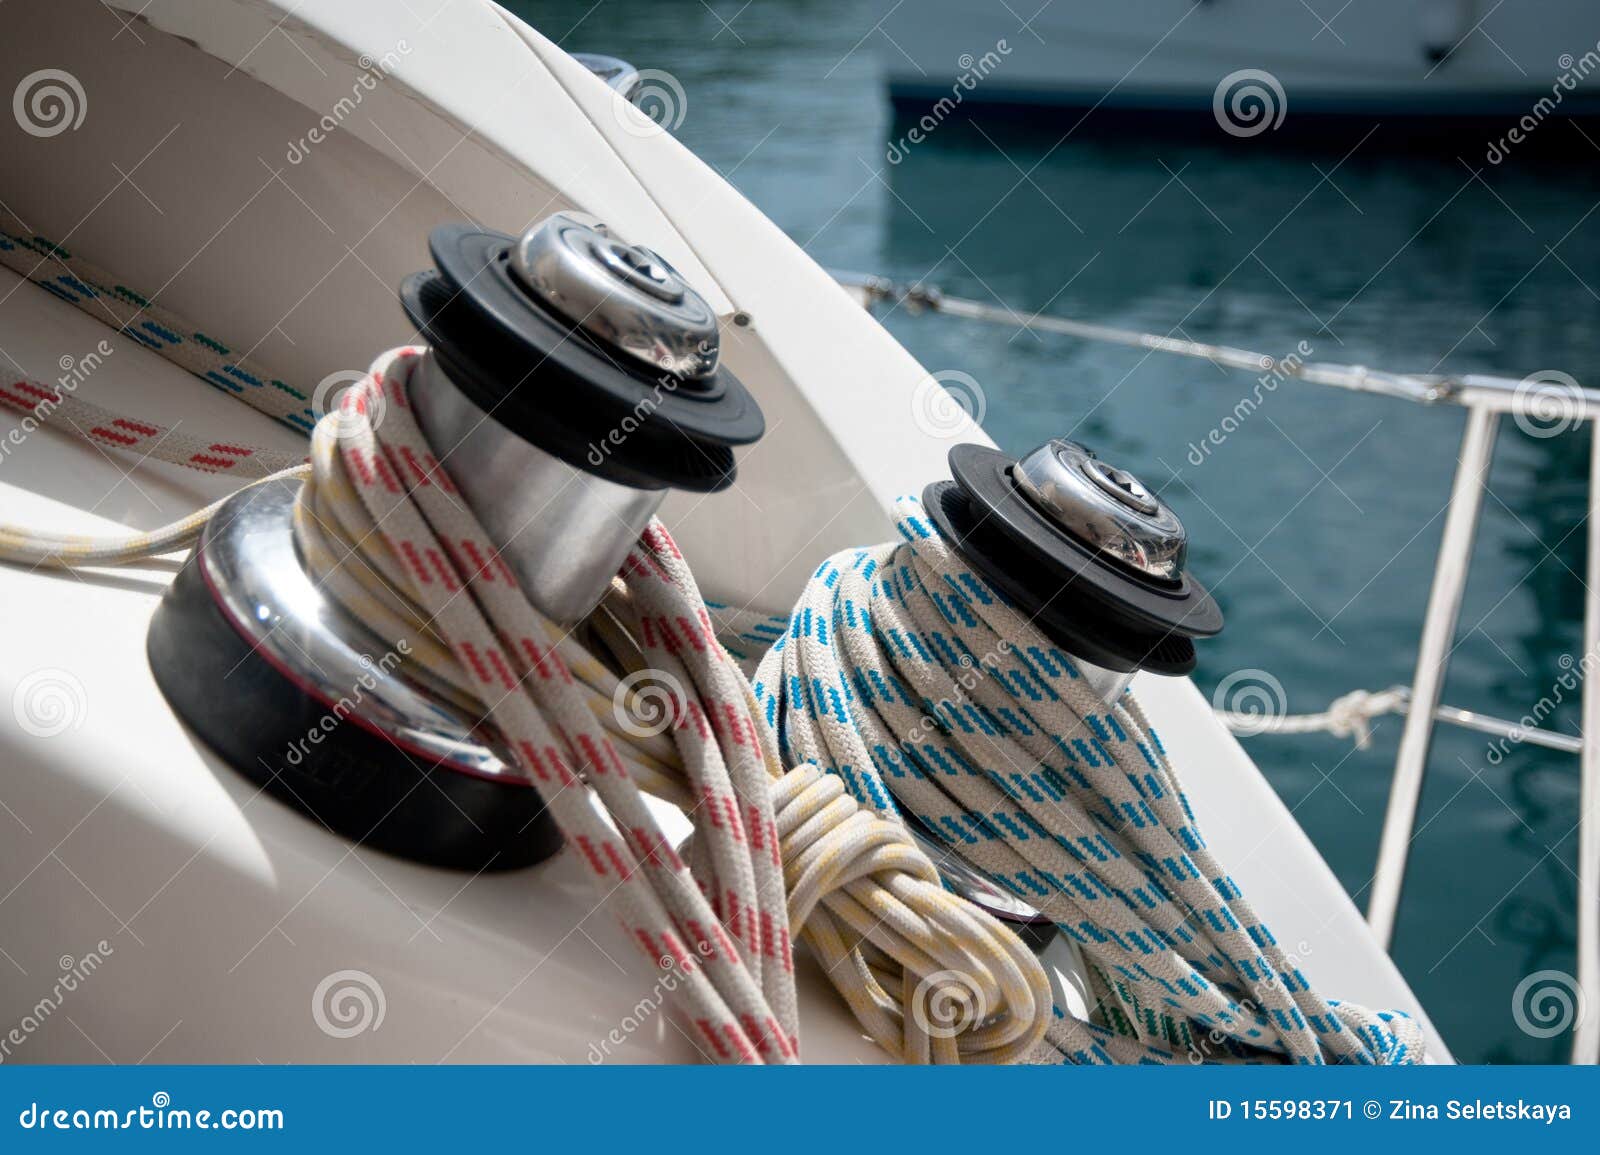 boat winch